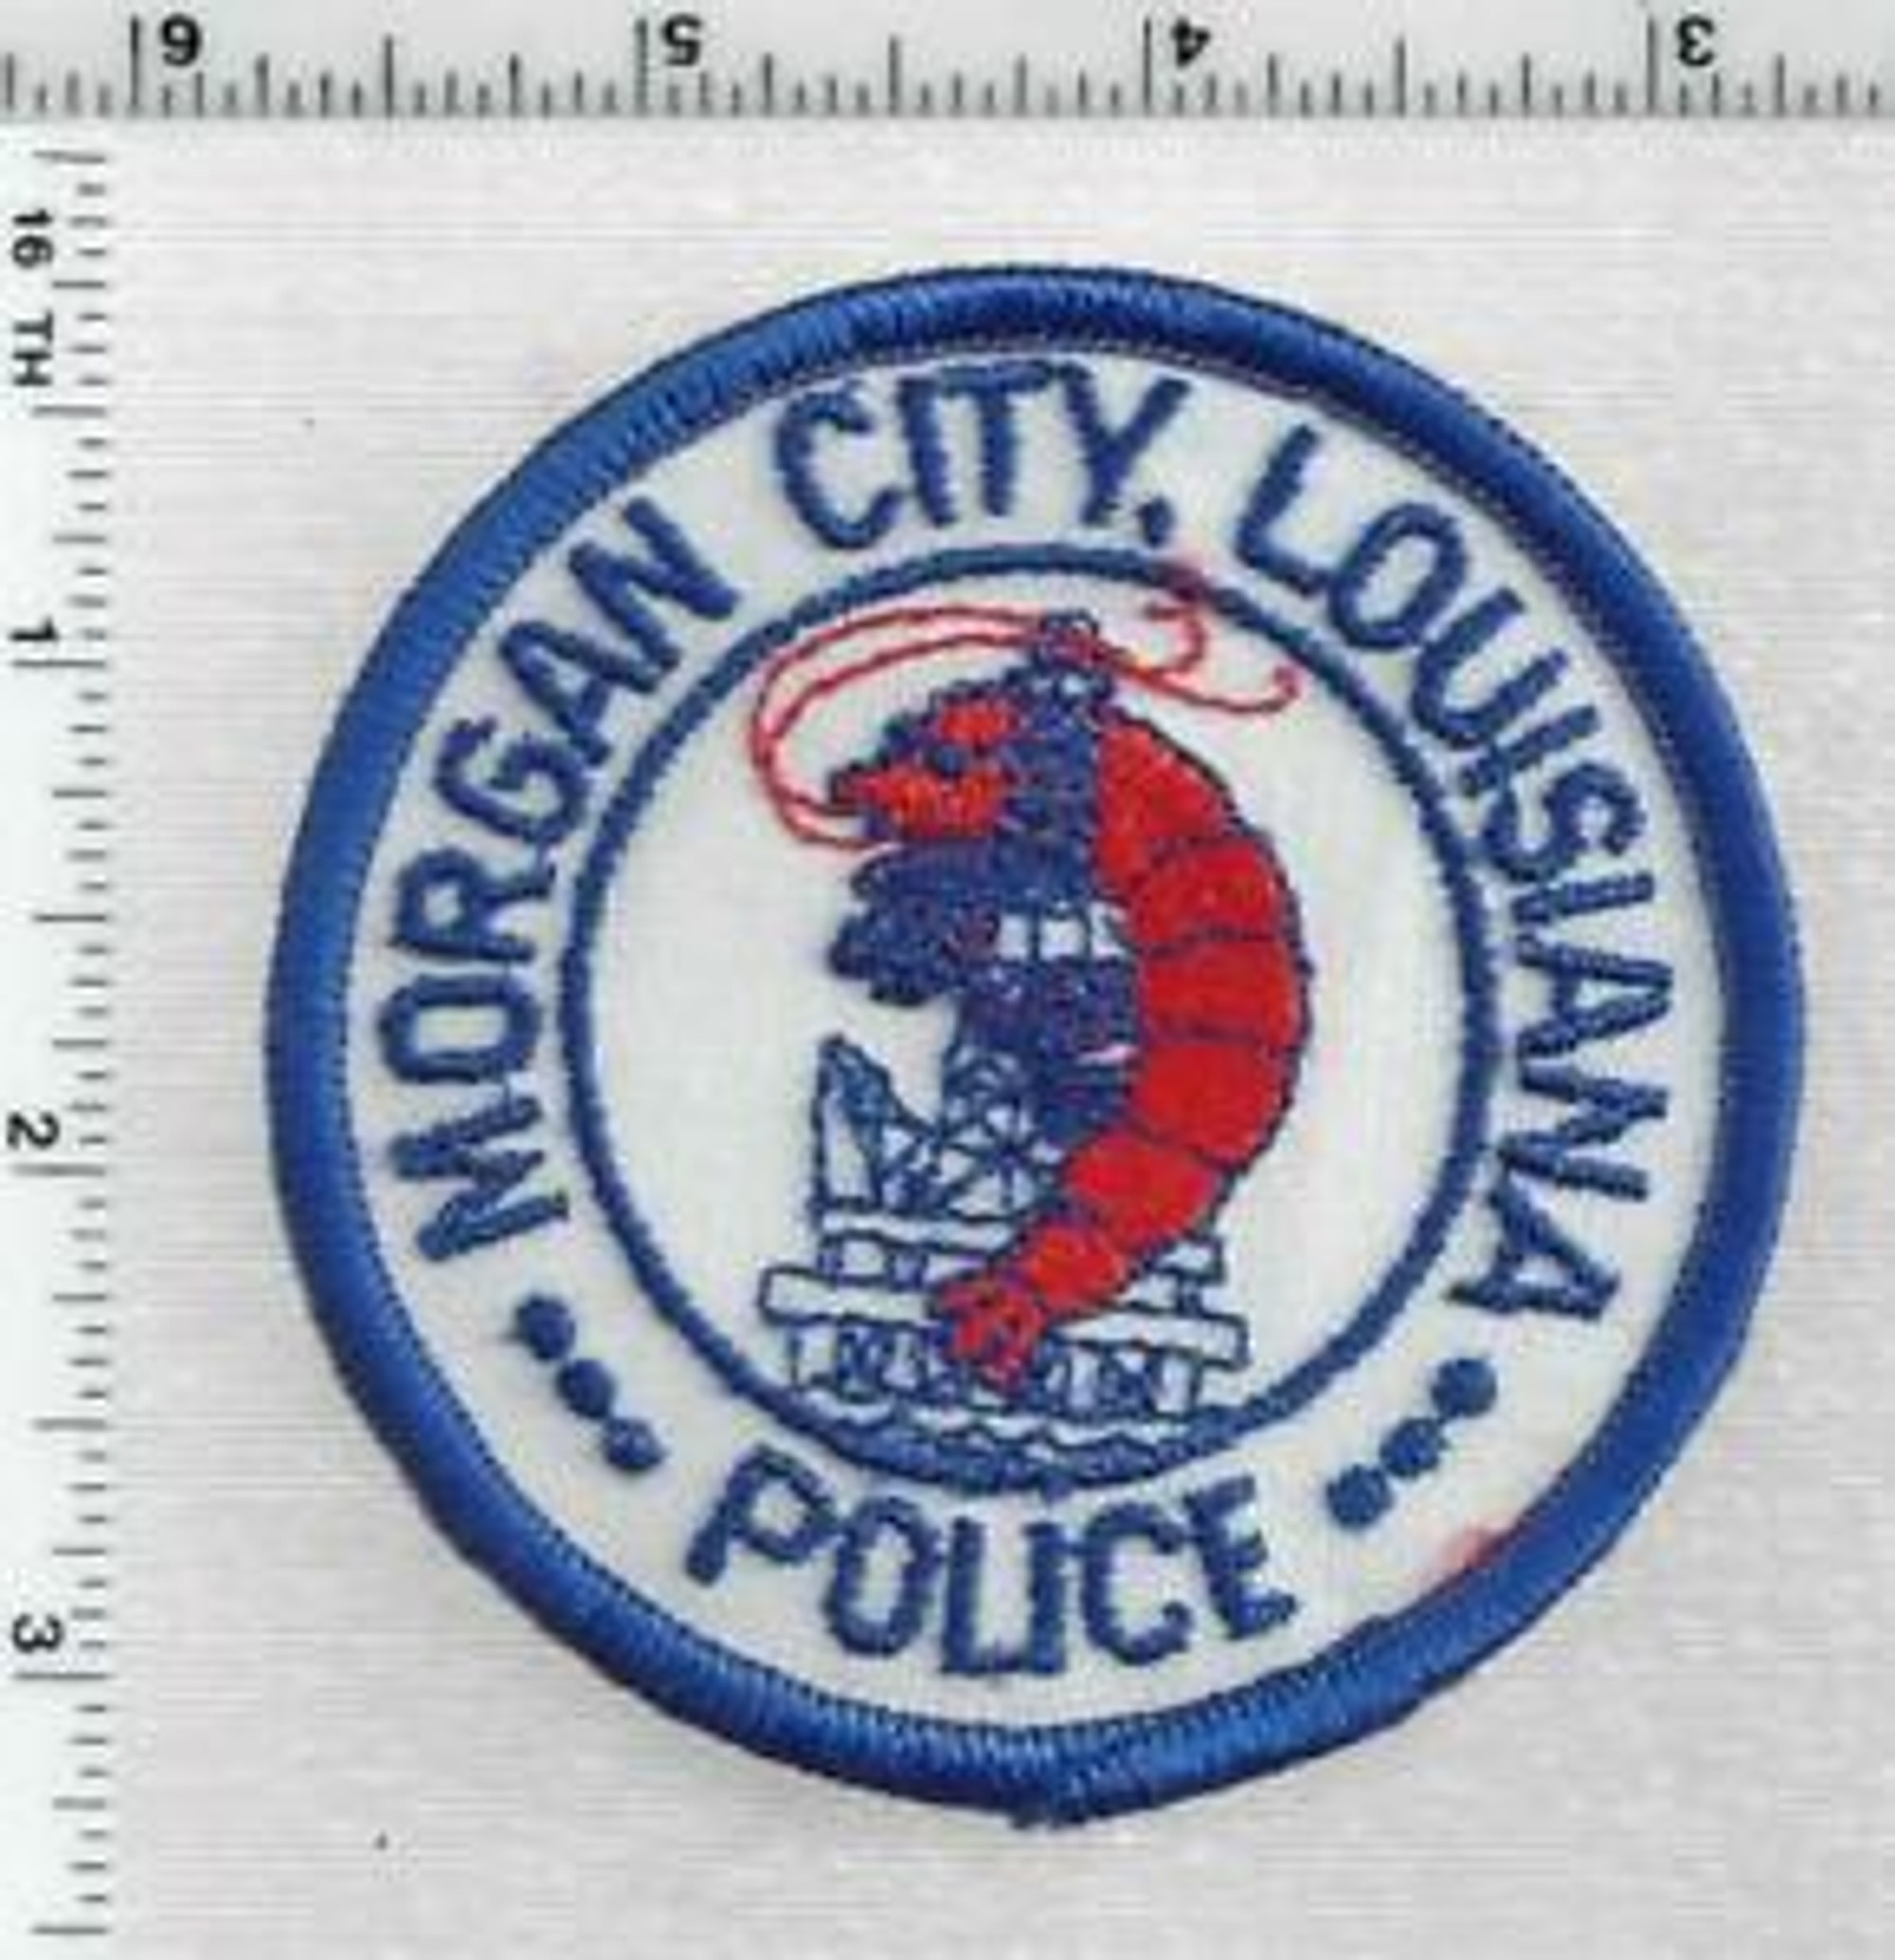 Morgan City LA Police Patch